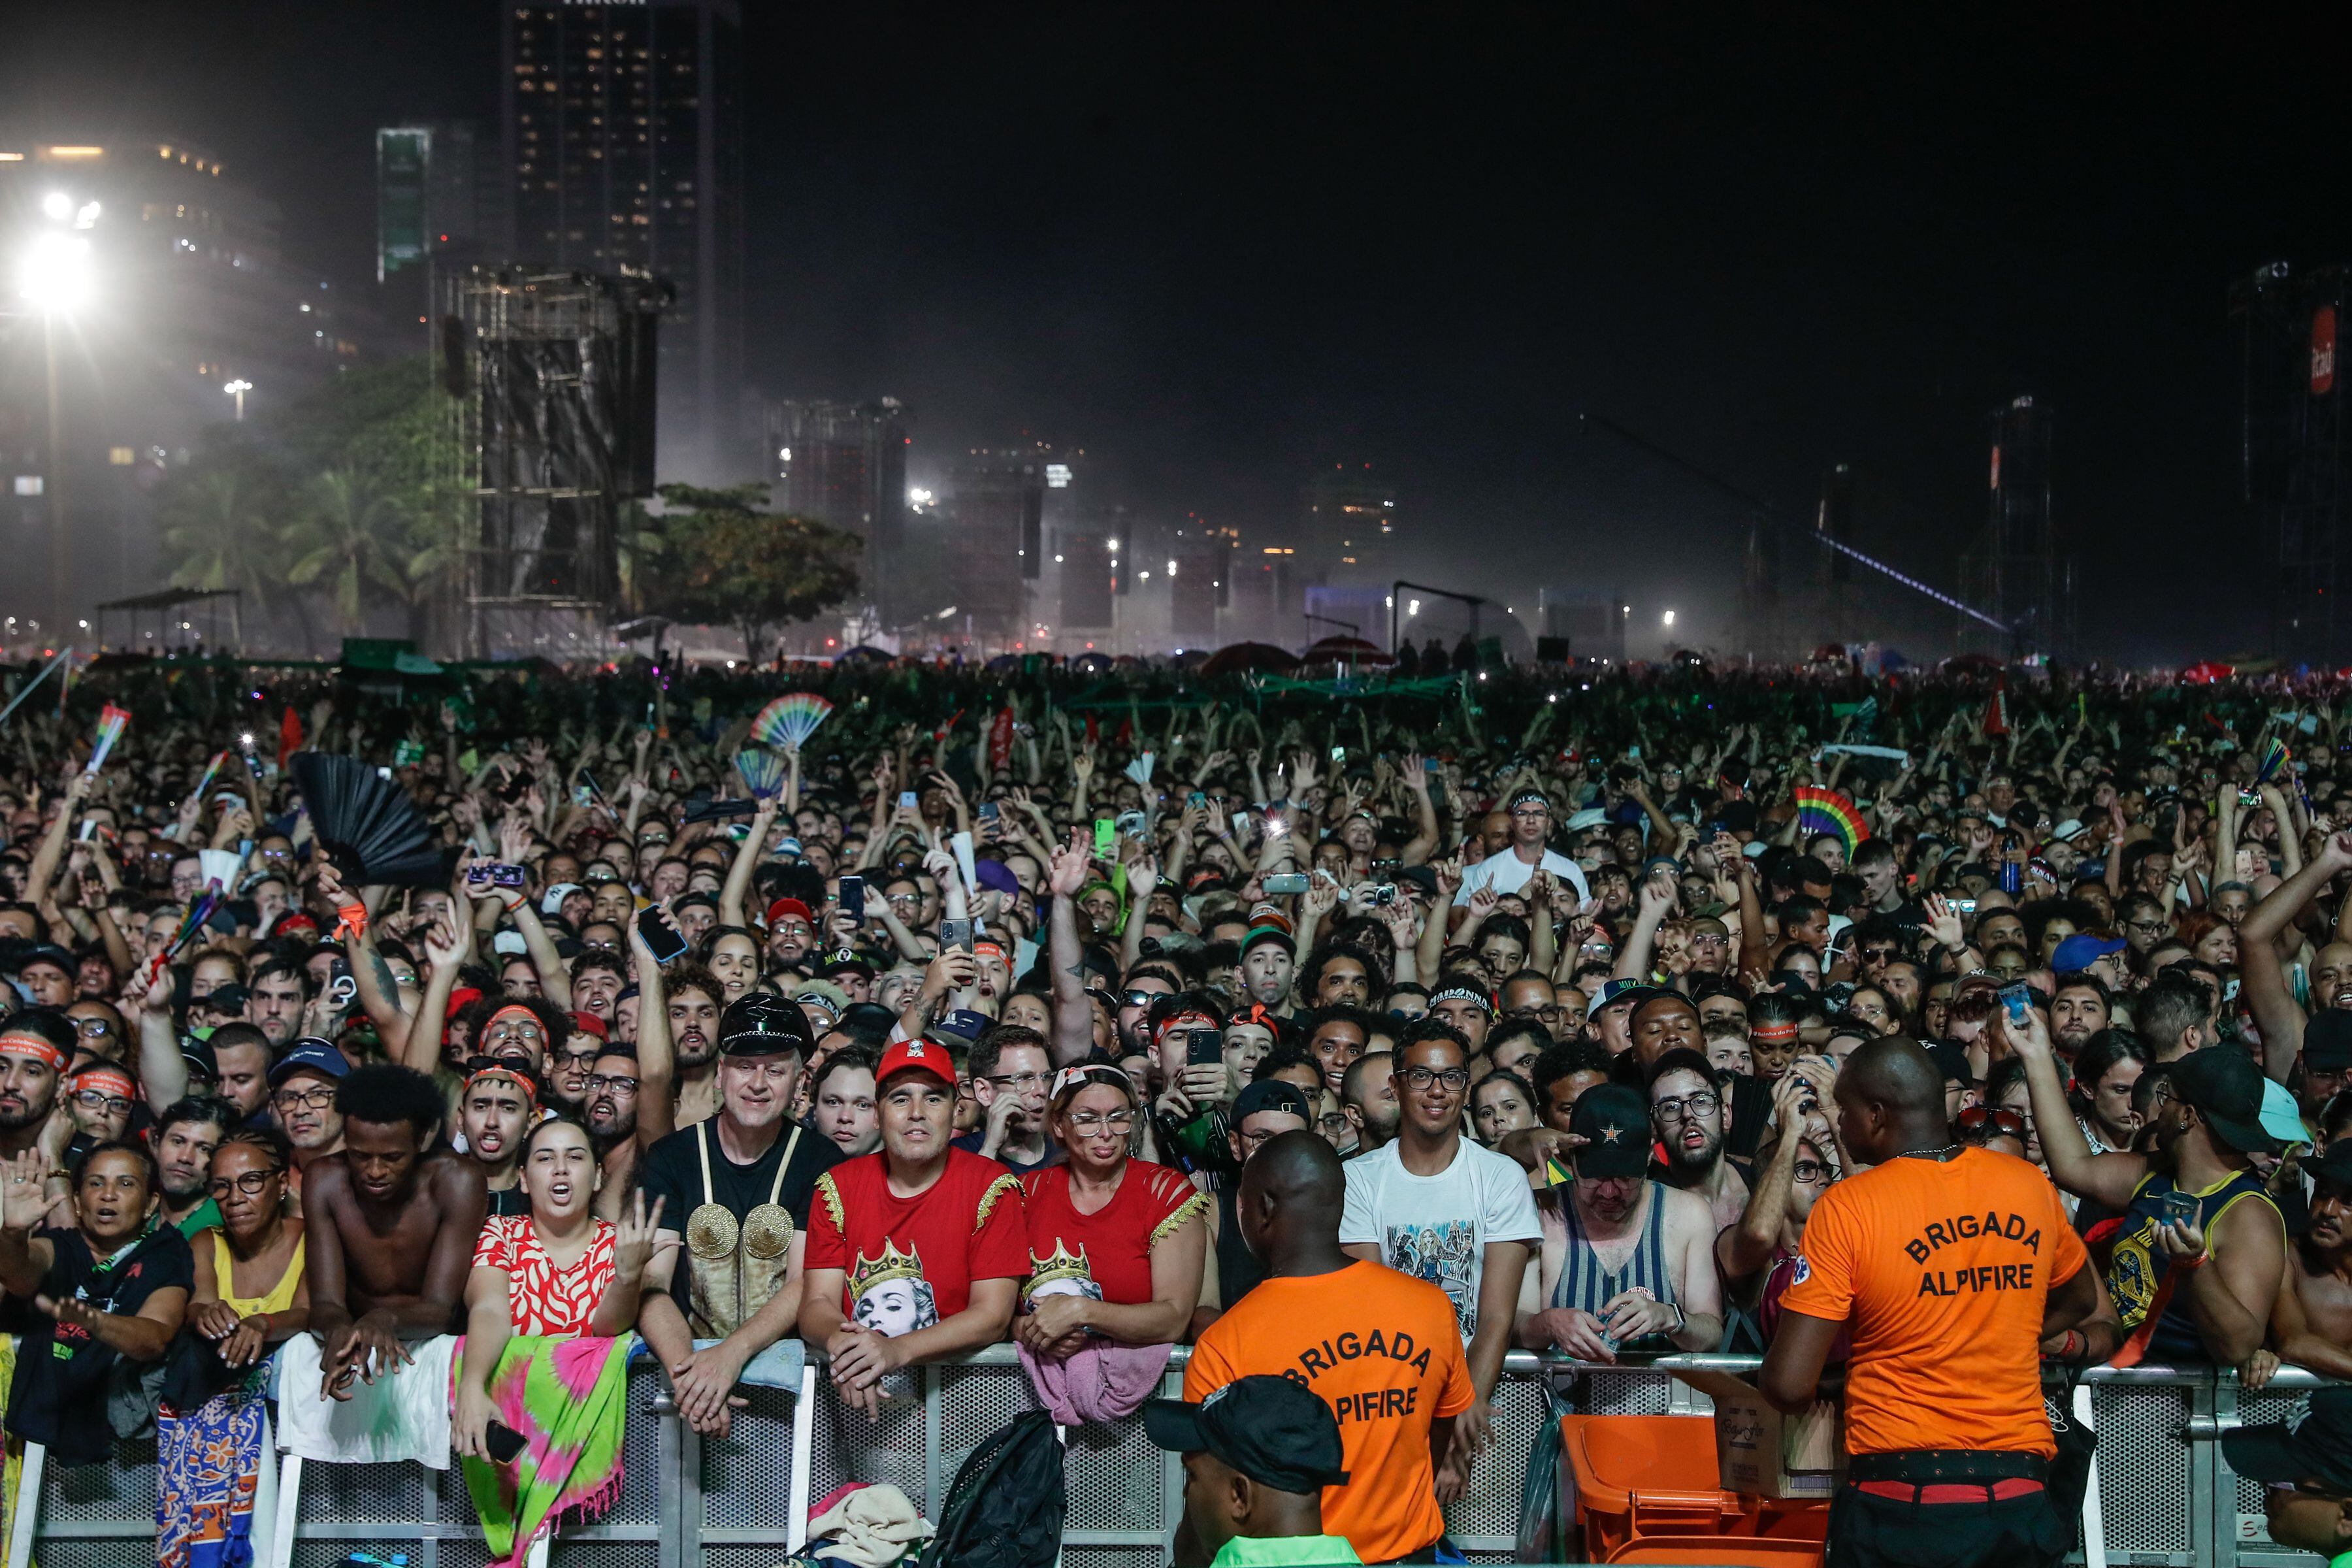 ¡monumental! madonna aglomeró a 1.5 millones de personas en la playa de copacabana